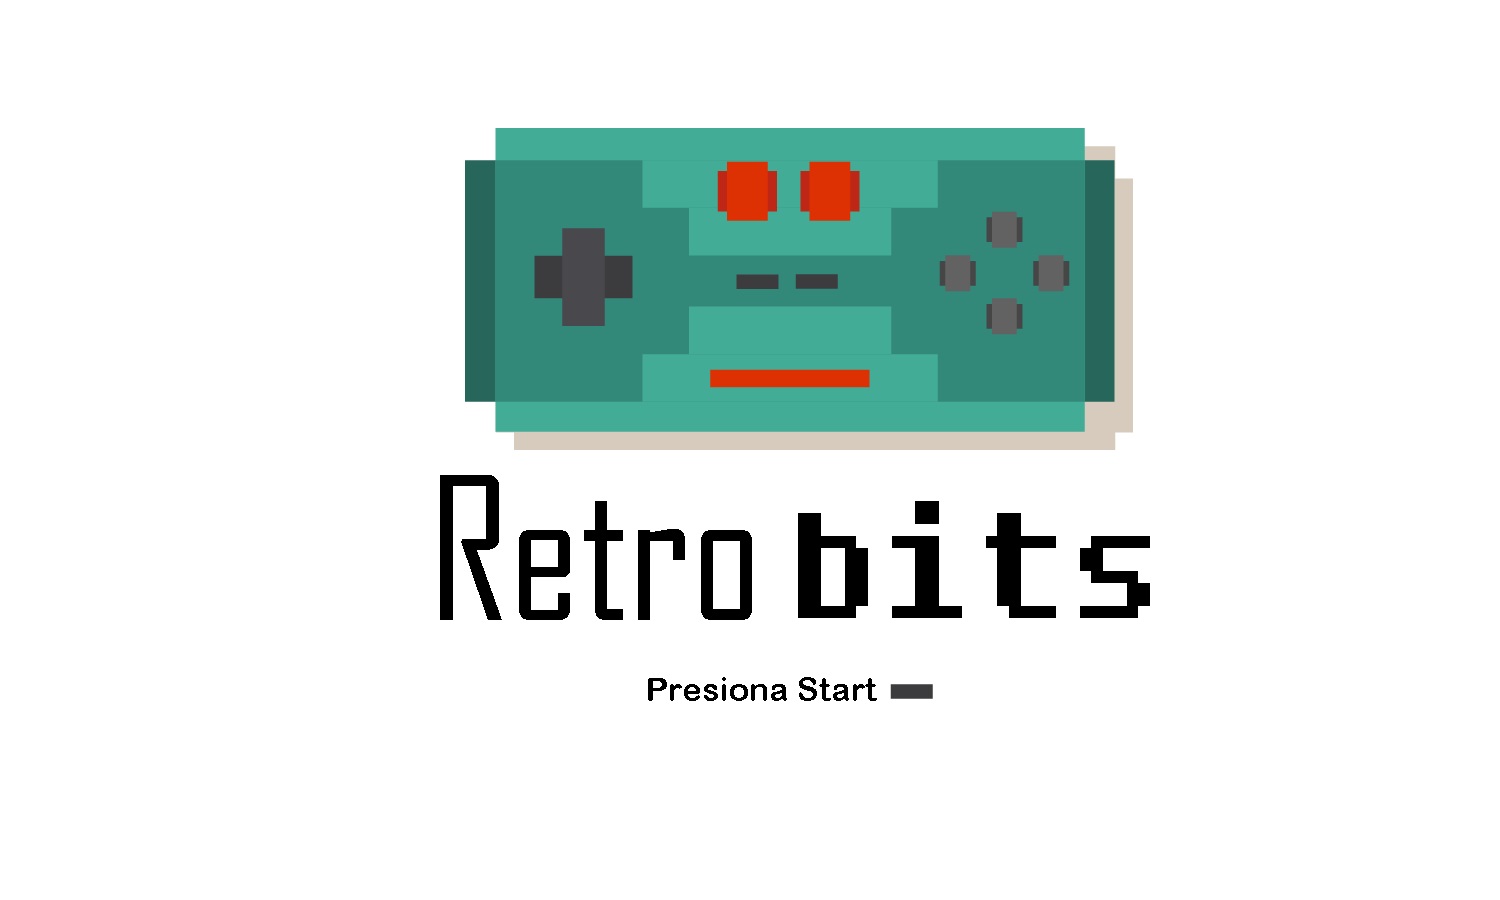 Retro bits - 10 de febrero de 2020